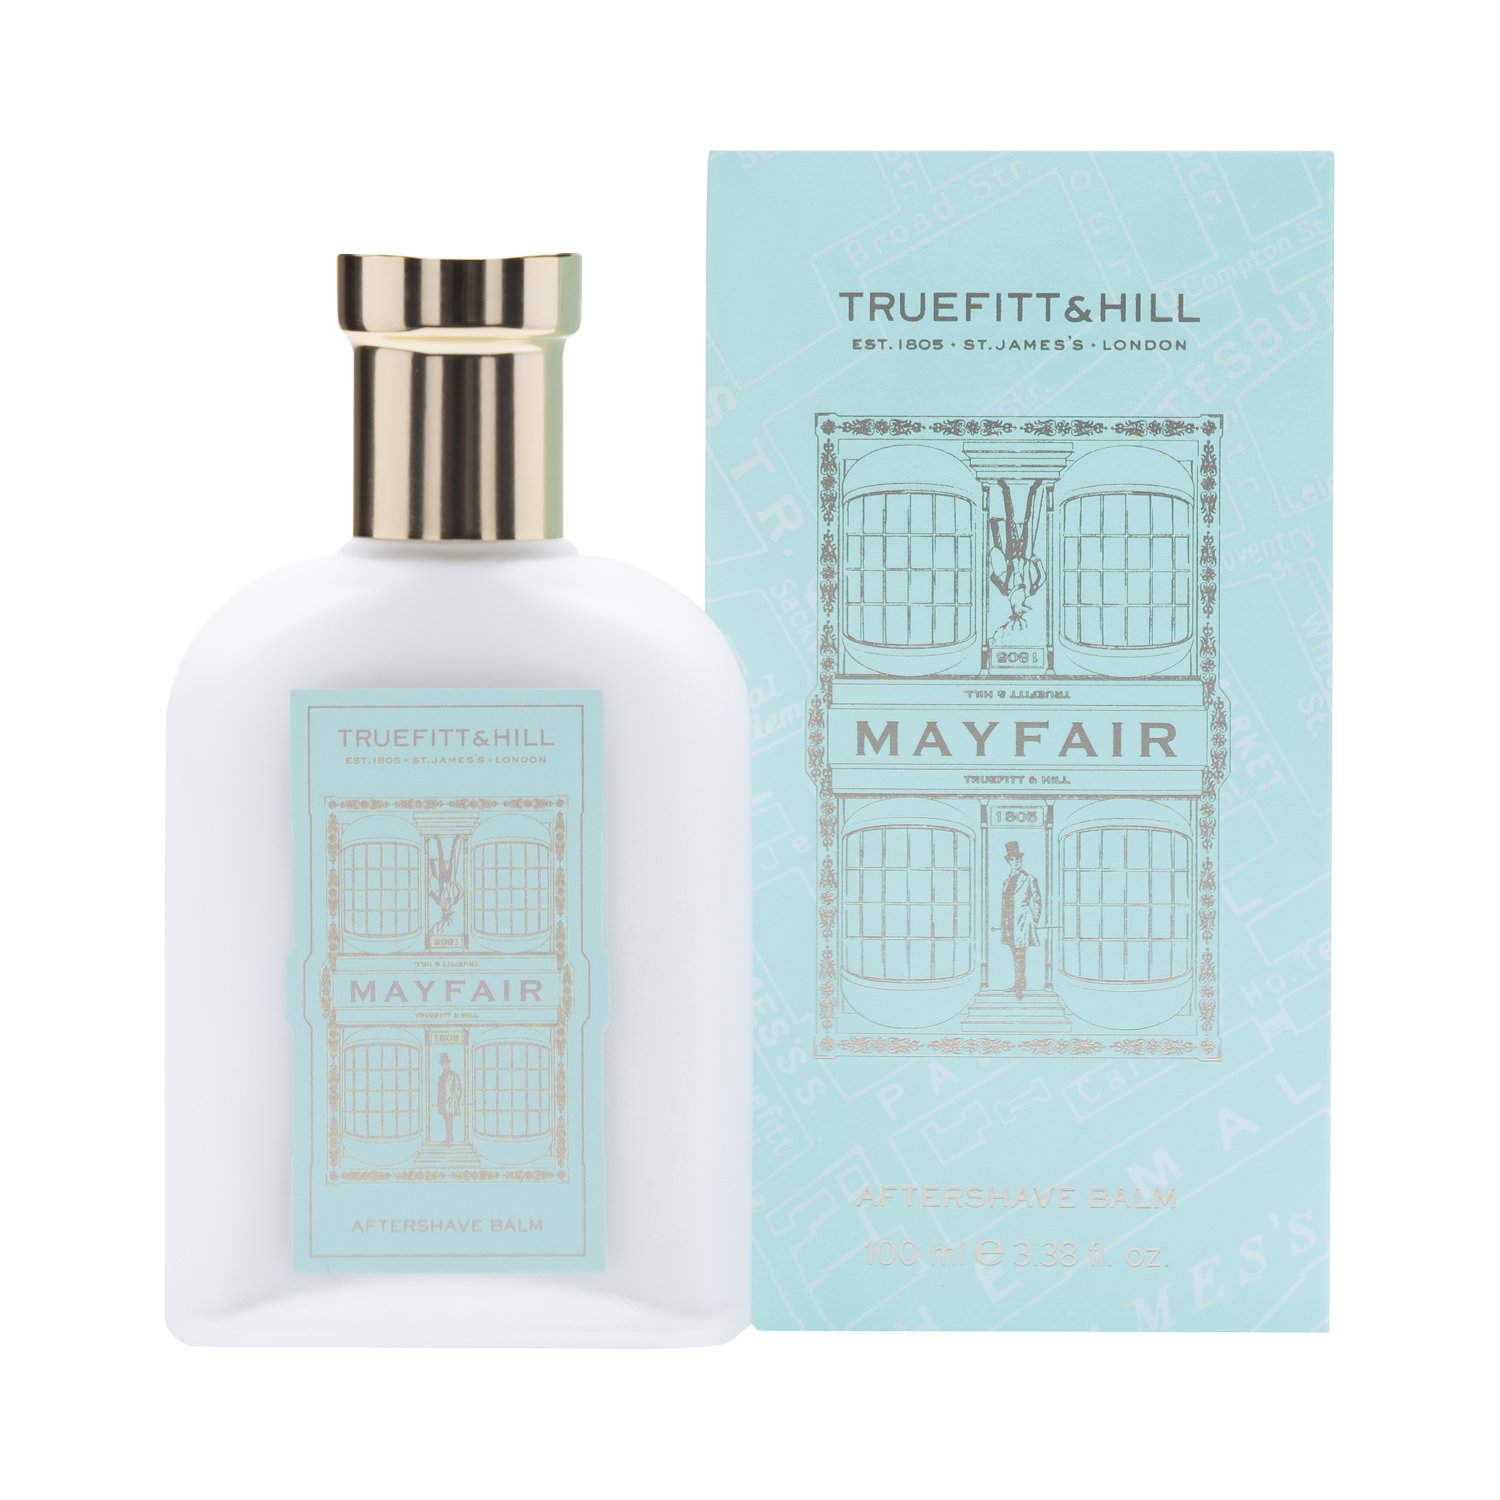 Truefitt & Hill - Mayfair - Aftershave Balsam